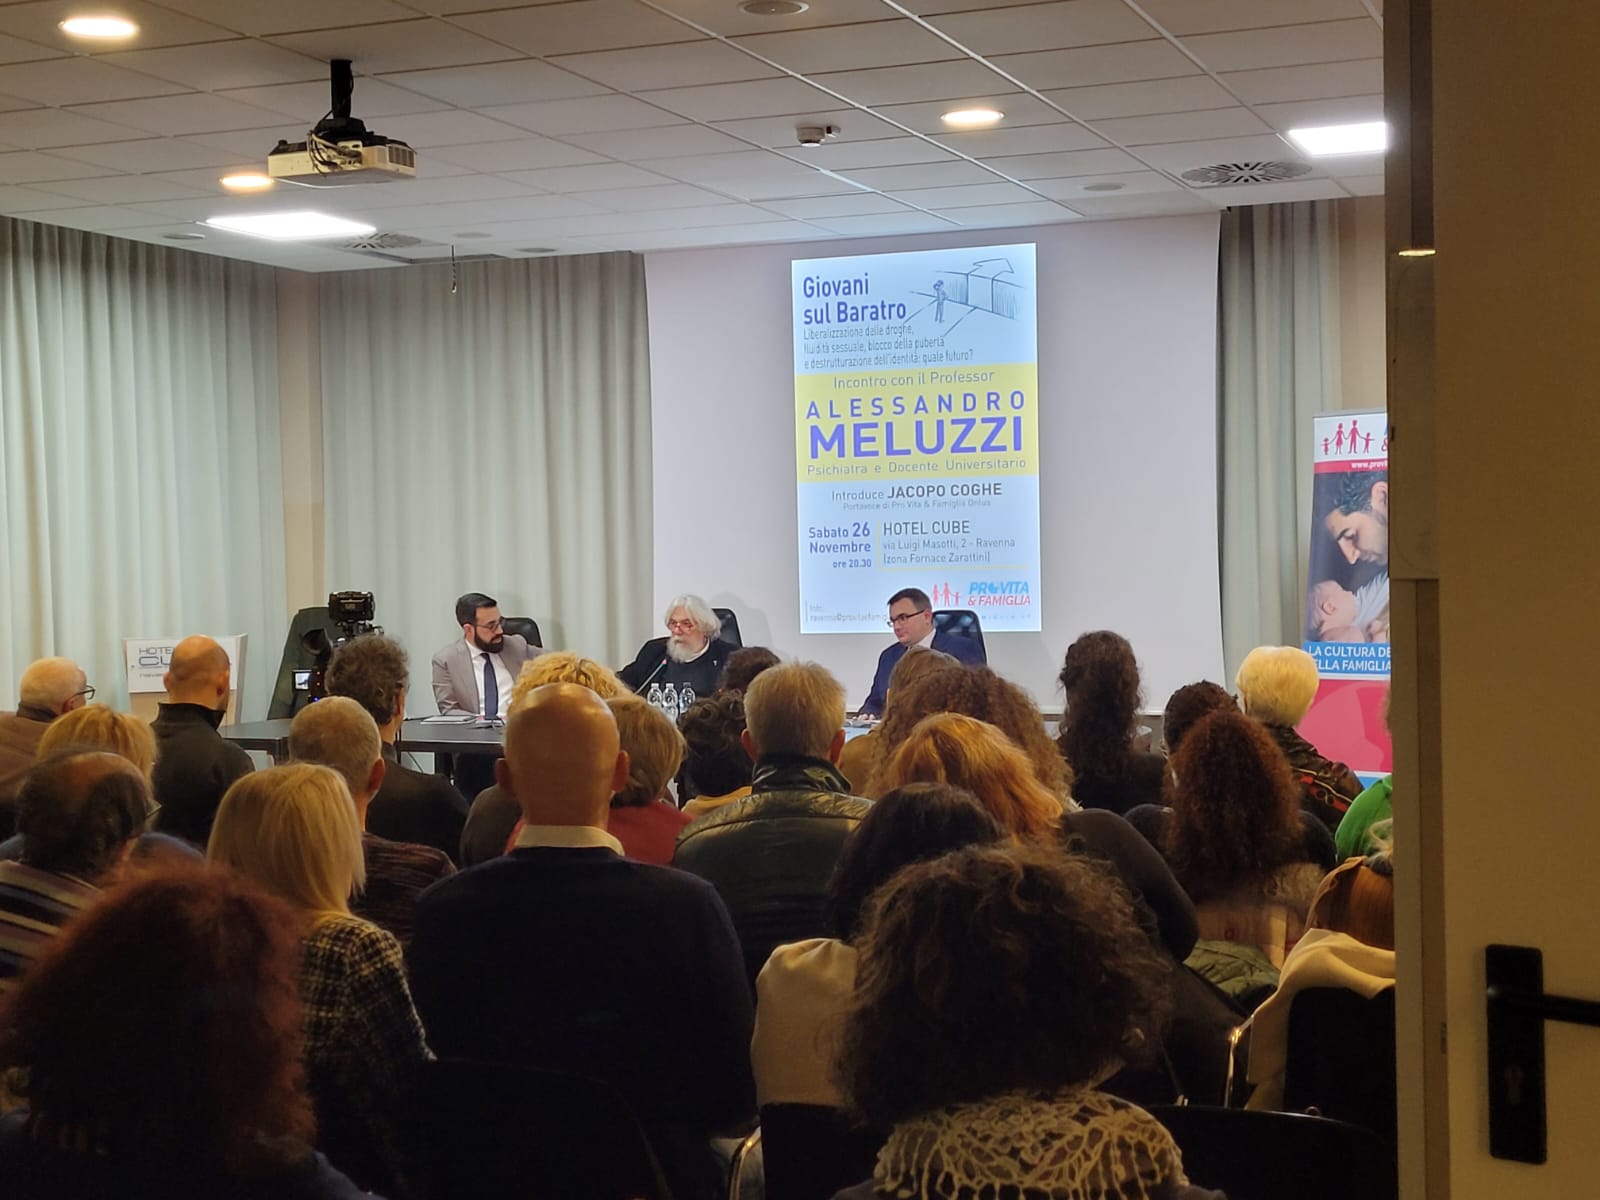 Ravenna. Successo per il convegno con Meluzzi. Pro Vita & Famiglia: «Cittadini chiedono verità e informazione obiettiva» 1